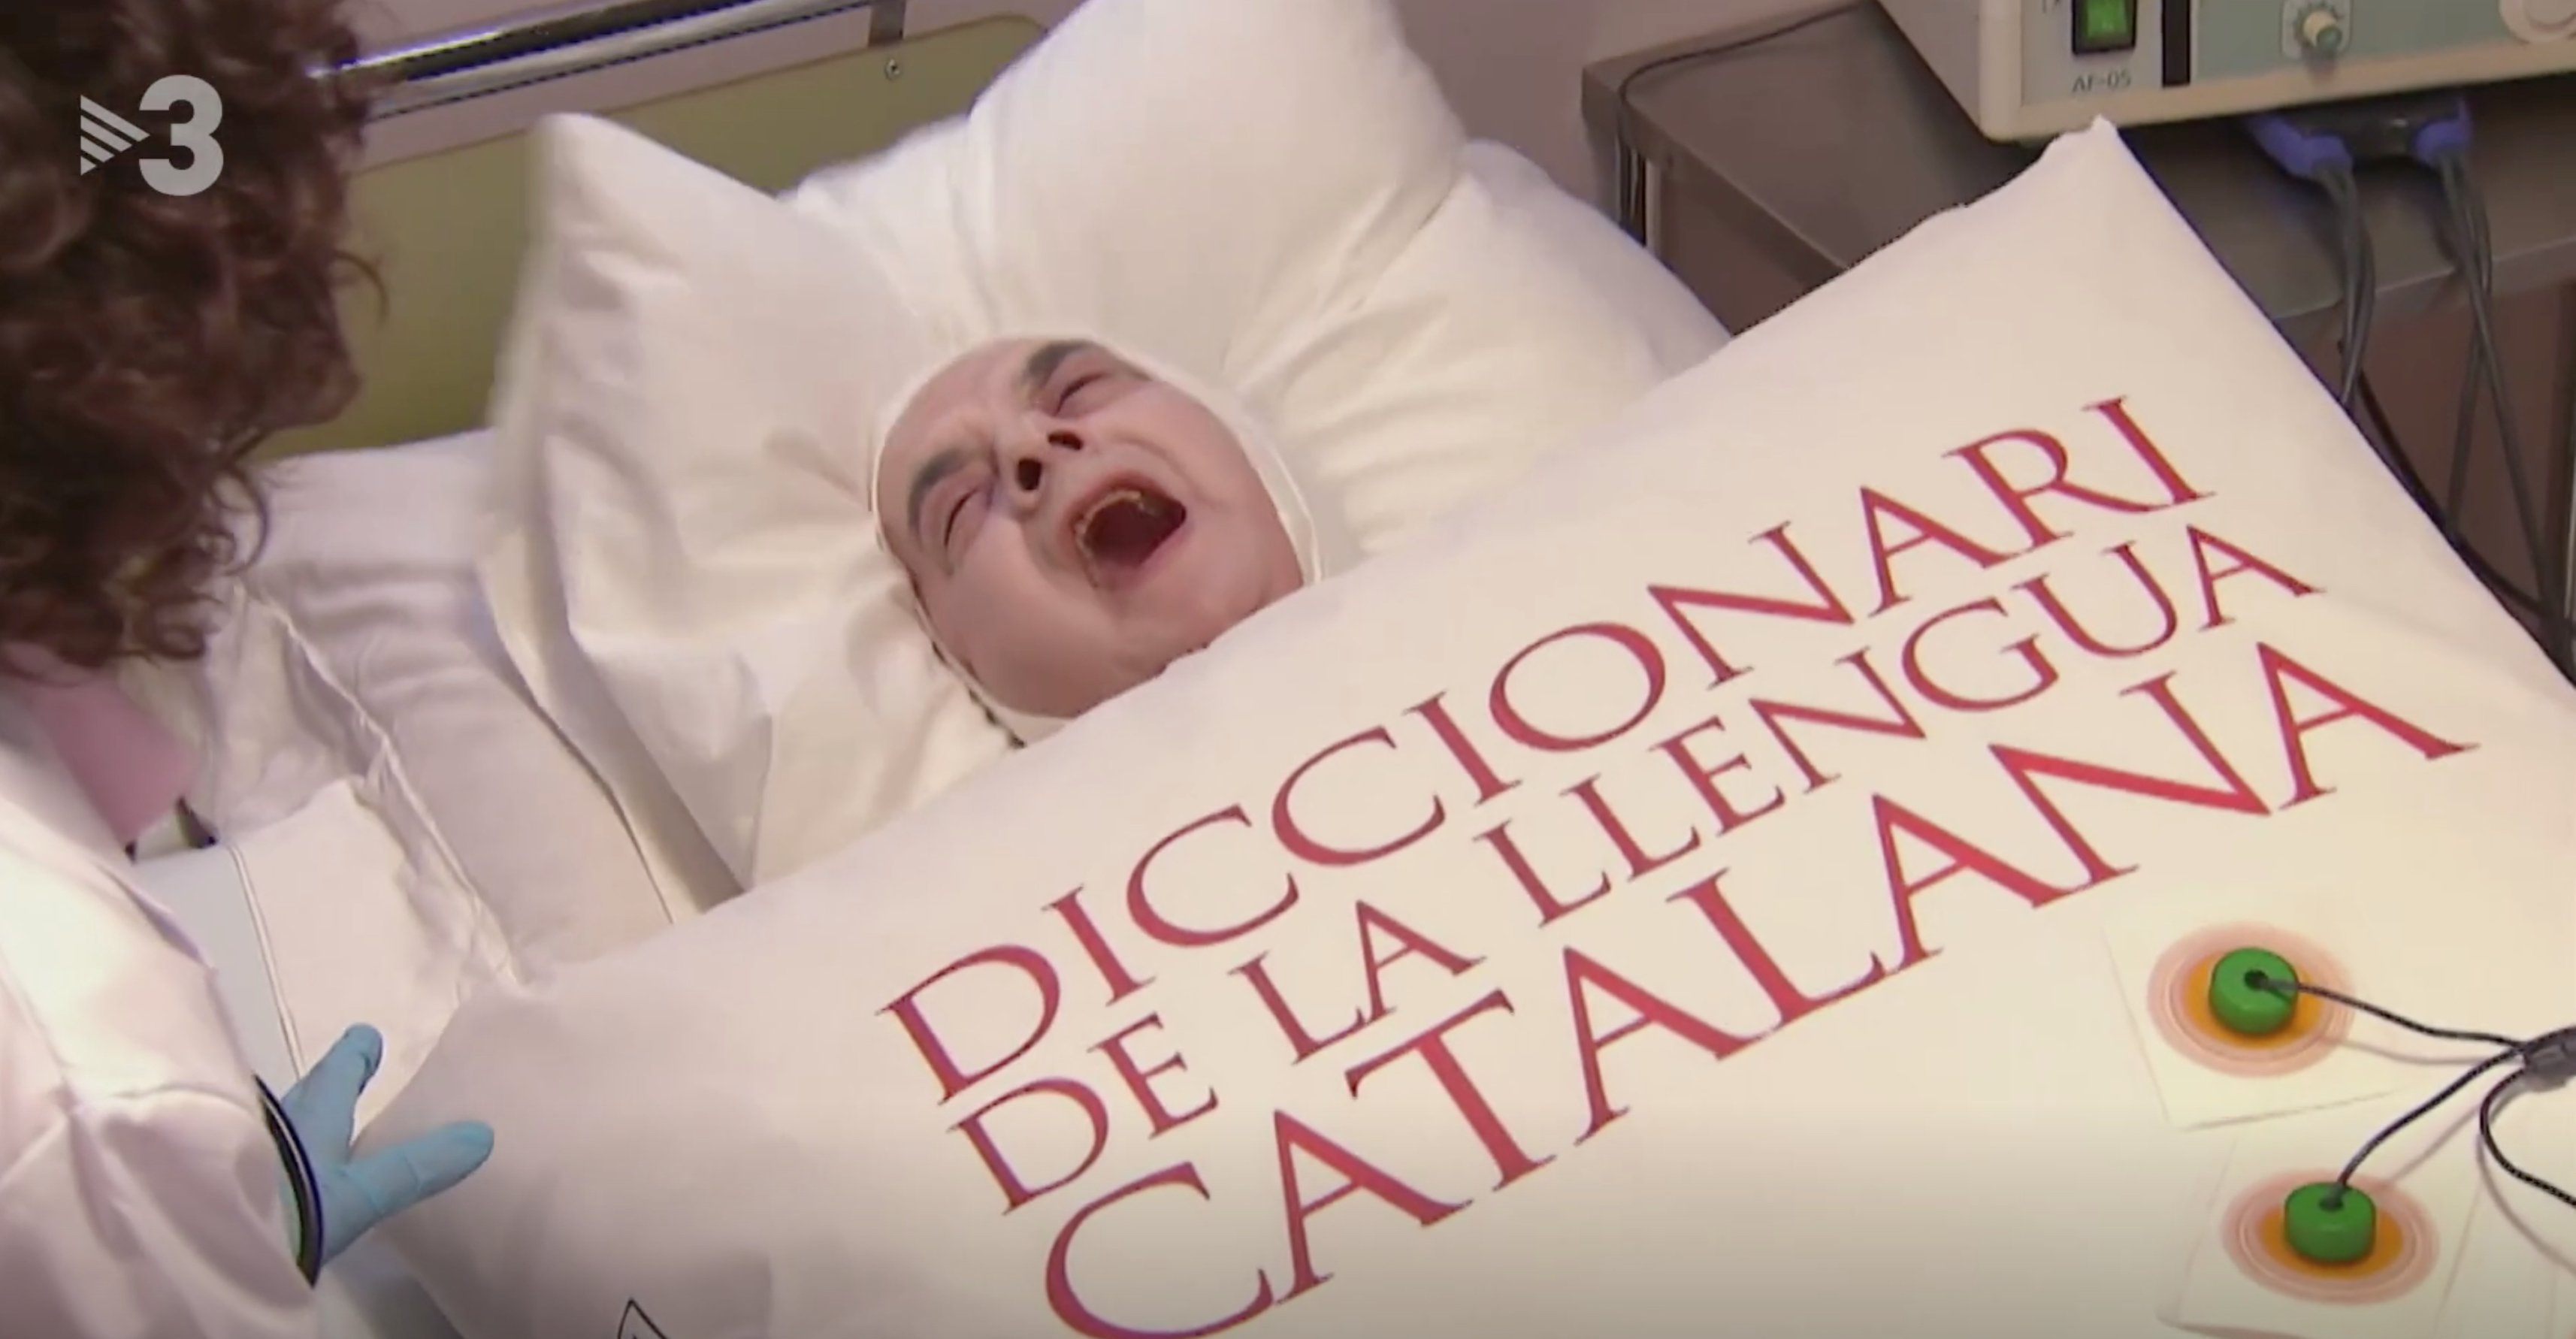 El catalán muere maltratado en TV3: "en castellano nos entendemos todos"